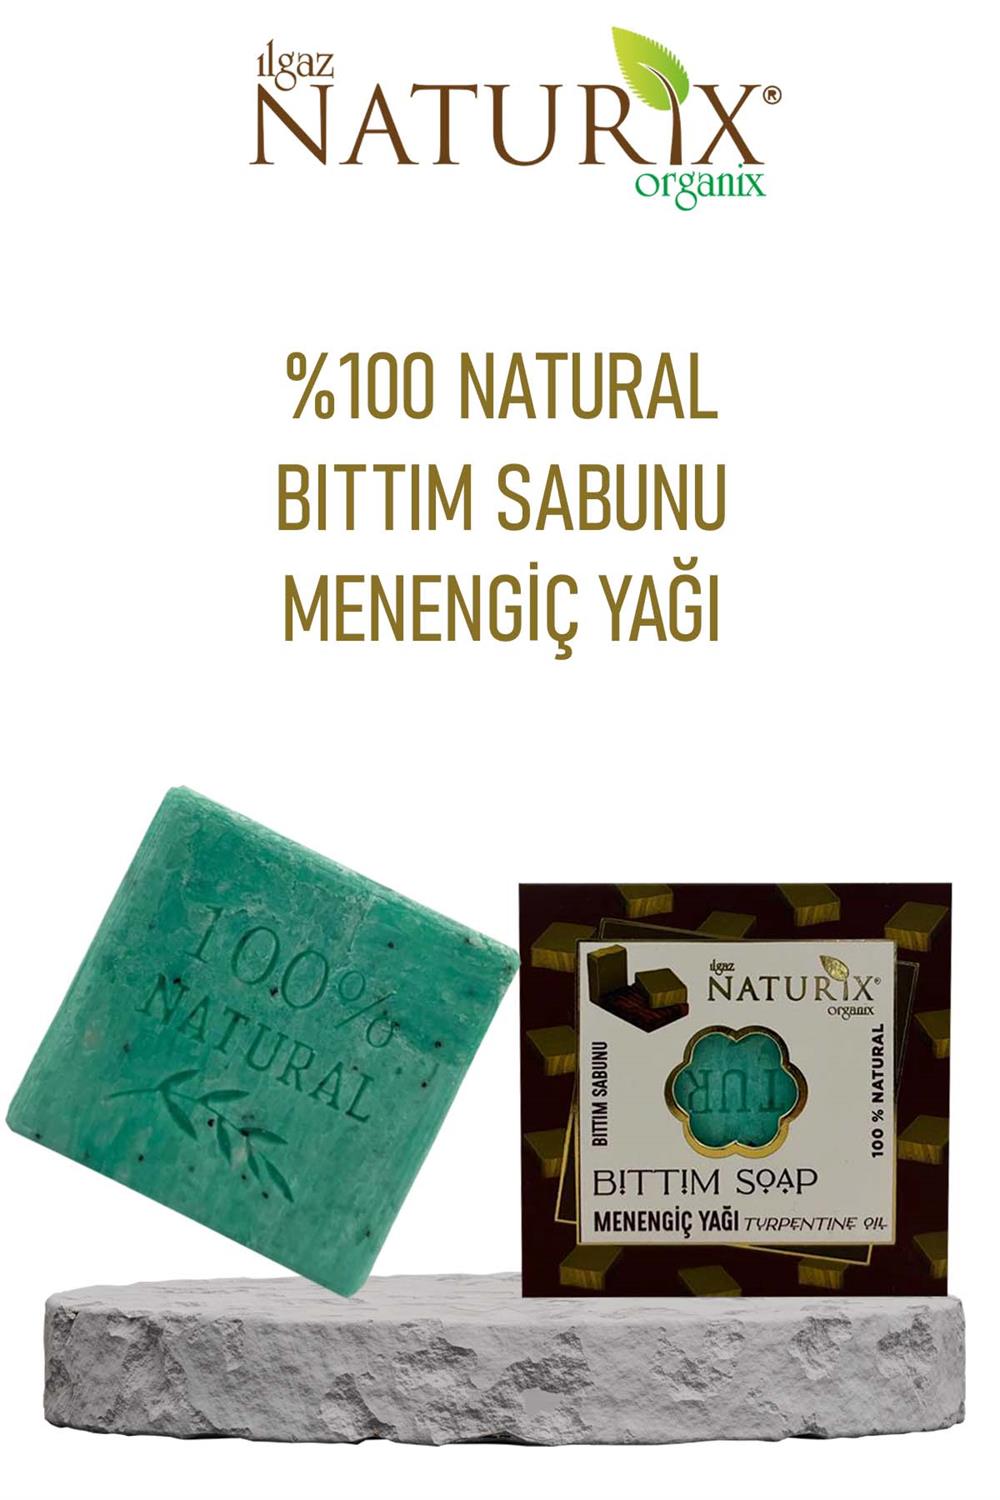 Natural Bıttım Sabunu Arındırıcı Egzama Mantar Önleyici Menengiç Botan  Yağlı %100 Doğal Bıttım Soap